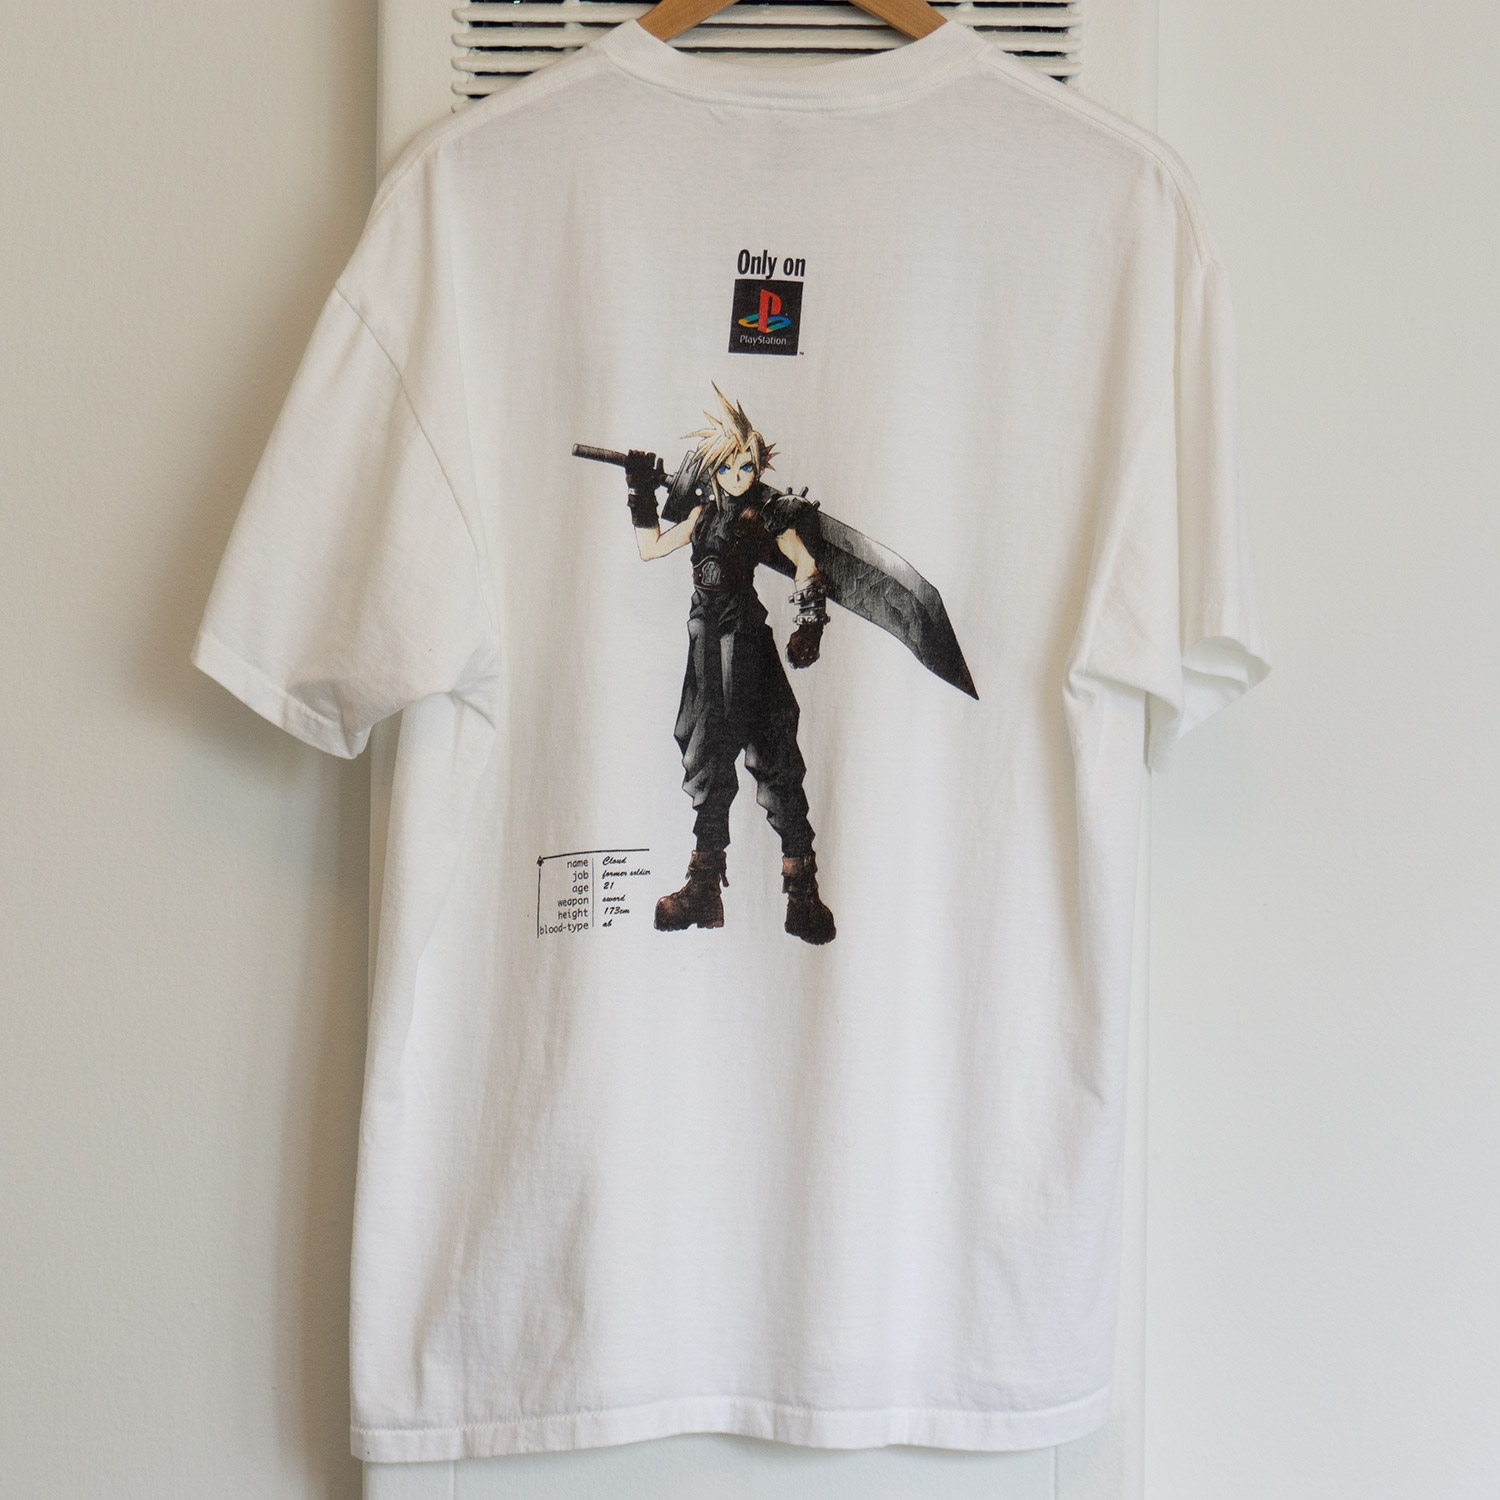 Vintage Final Fantasy VII T-shirt, Back